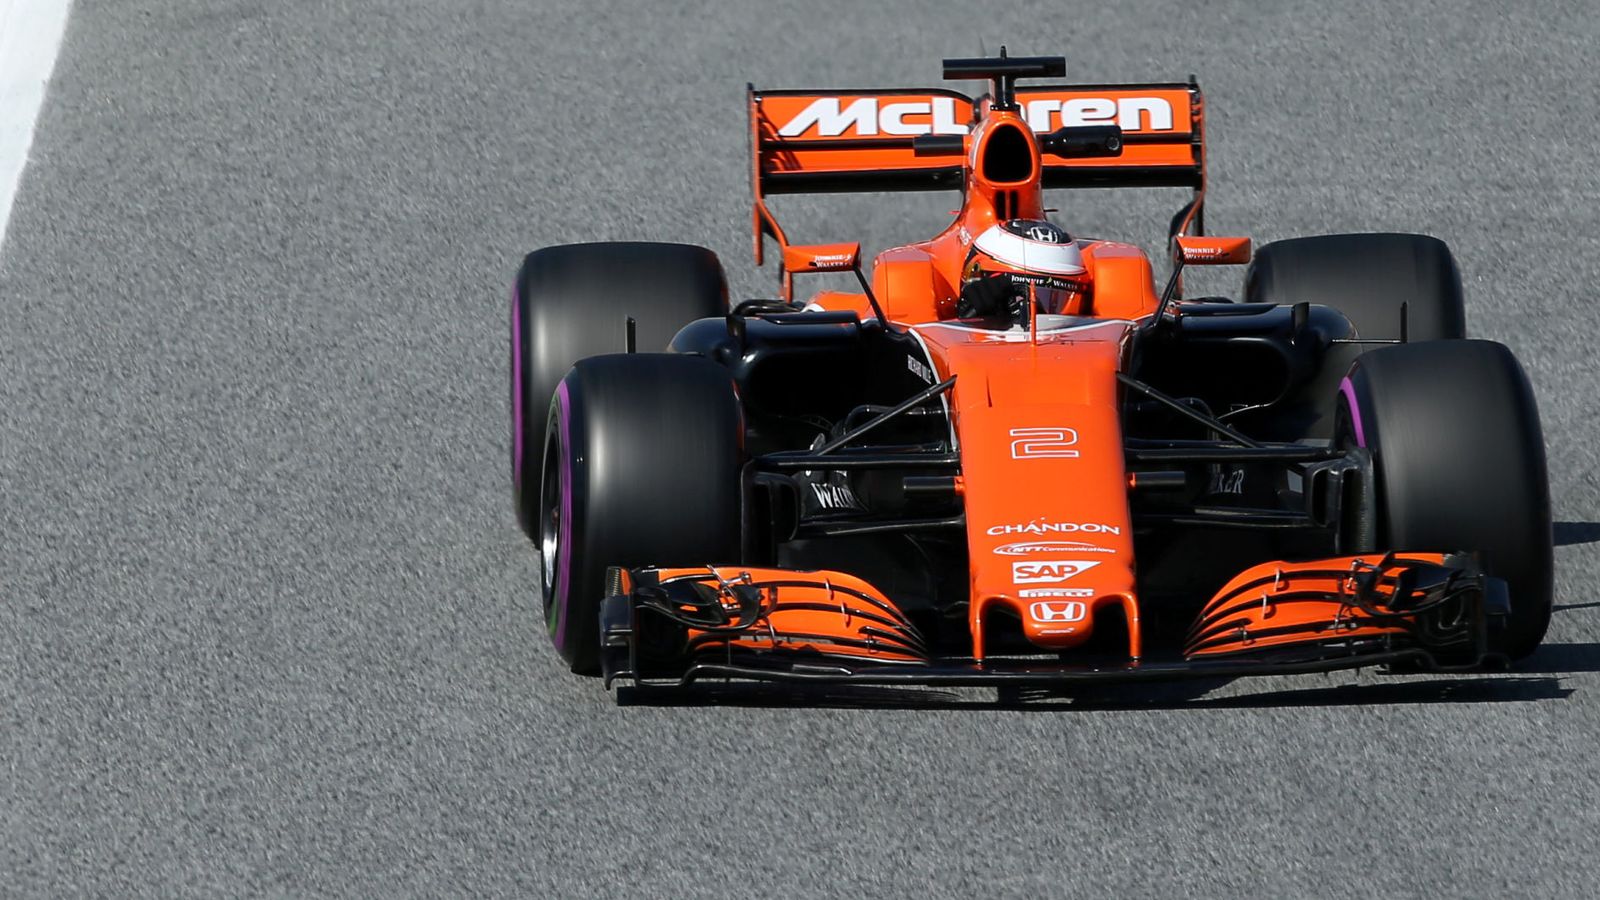 Foto: El McLaren, en la pista (Albert Gea/Reuters).